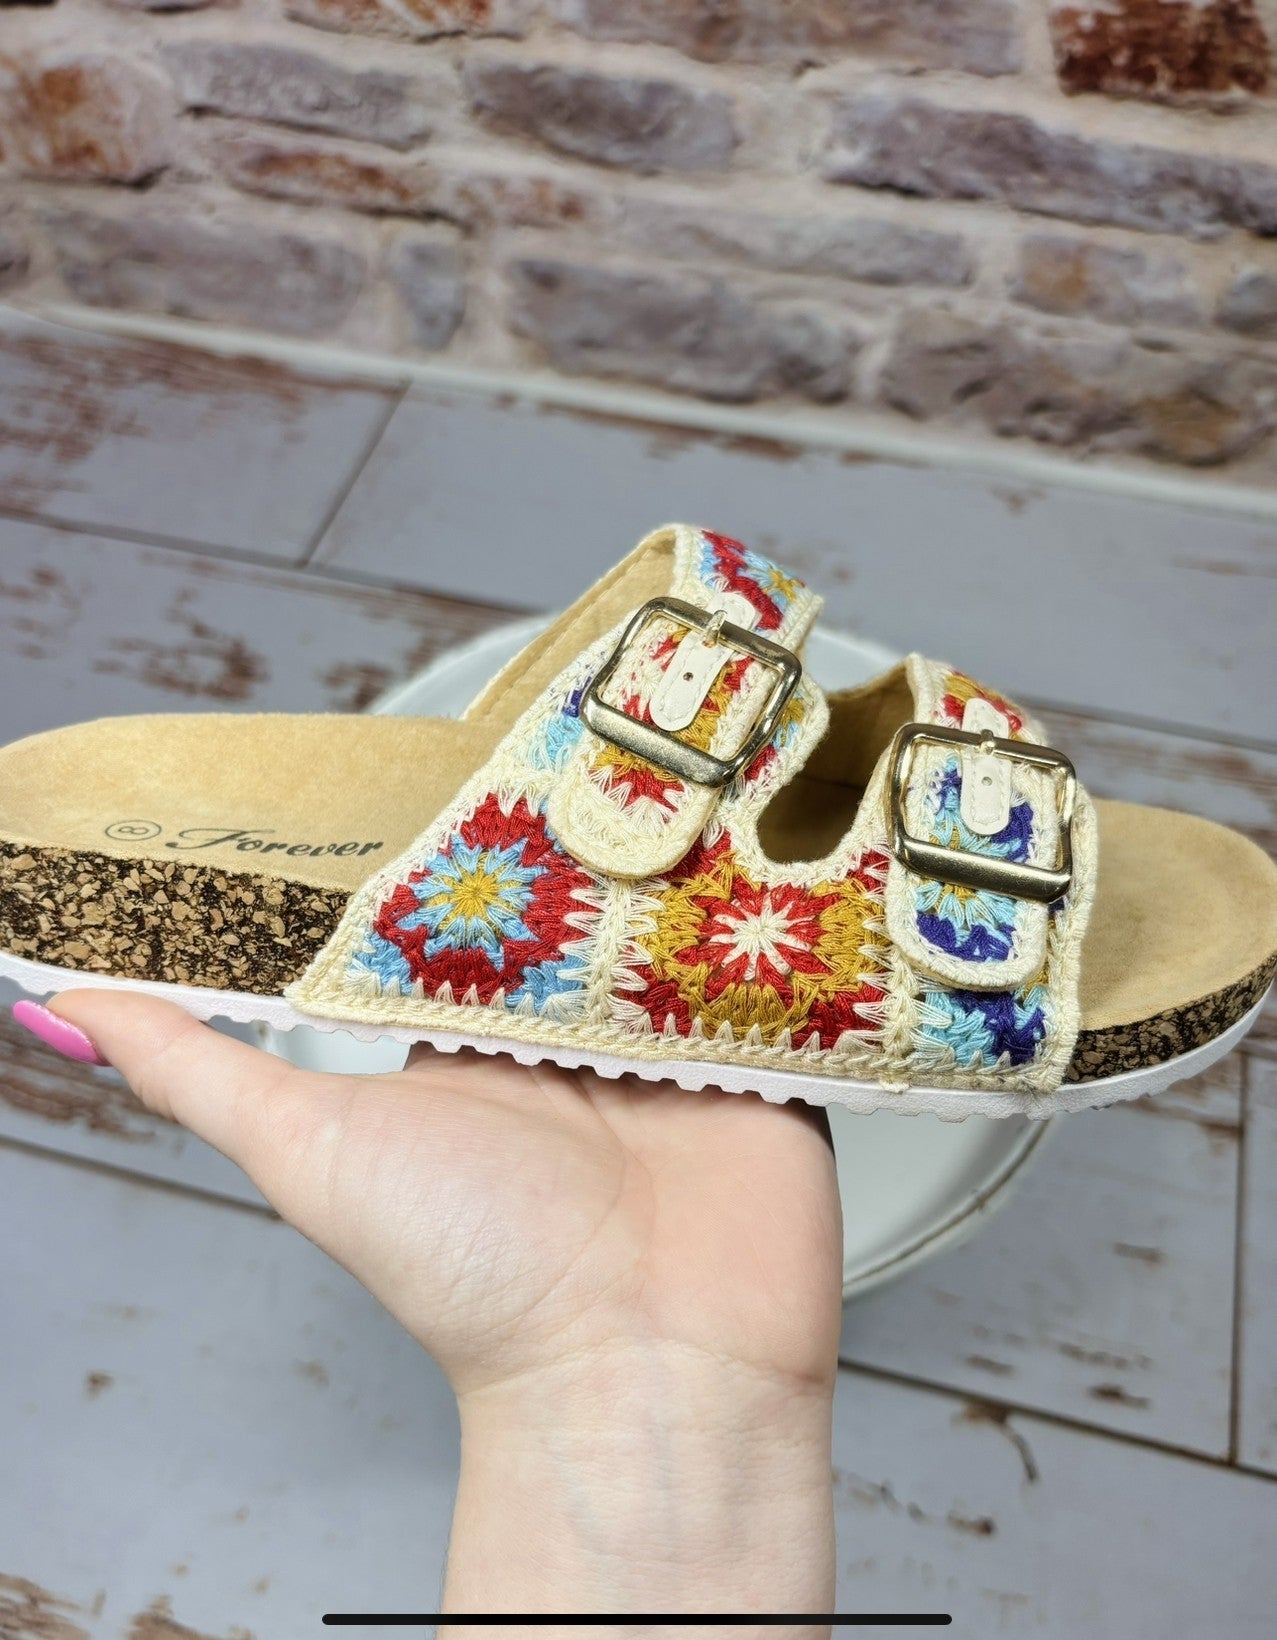 Callie Crochet Sandal